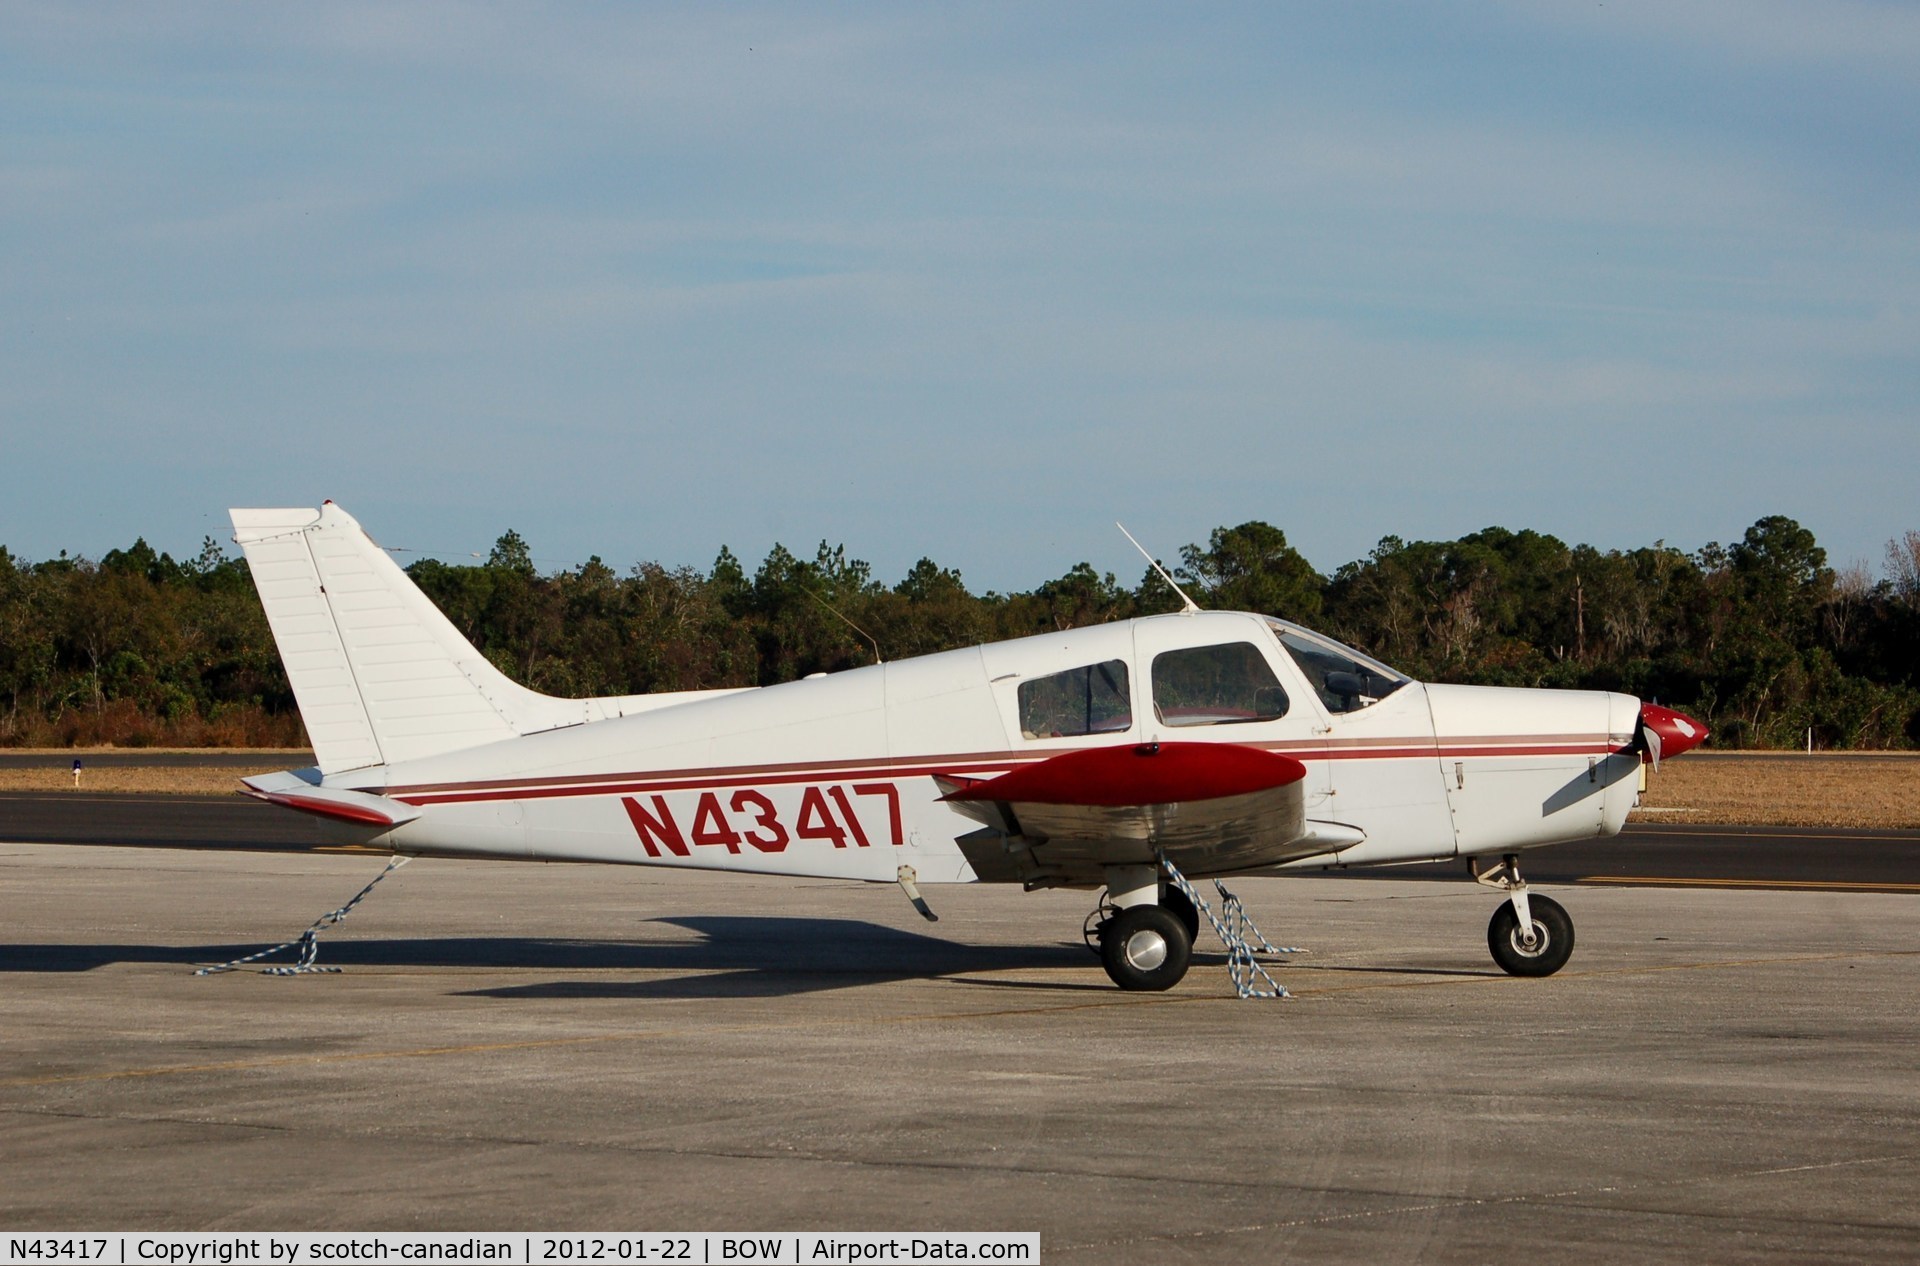 N43417, 1974 Piper PA-28-140 C/N 28-7425264, 1974 Piper PA-28-140 N43417 at Bartow Municipal Airport, Bartow, FL 